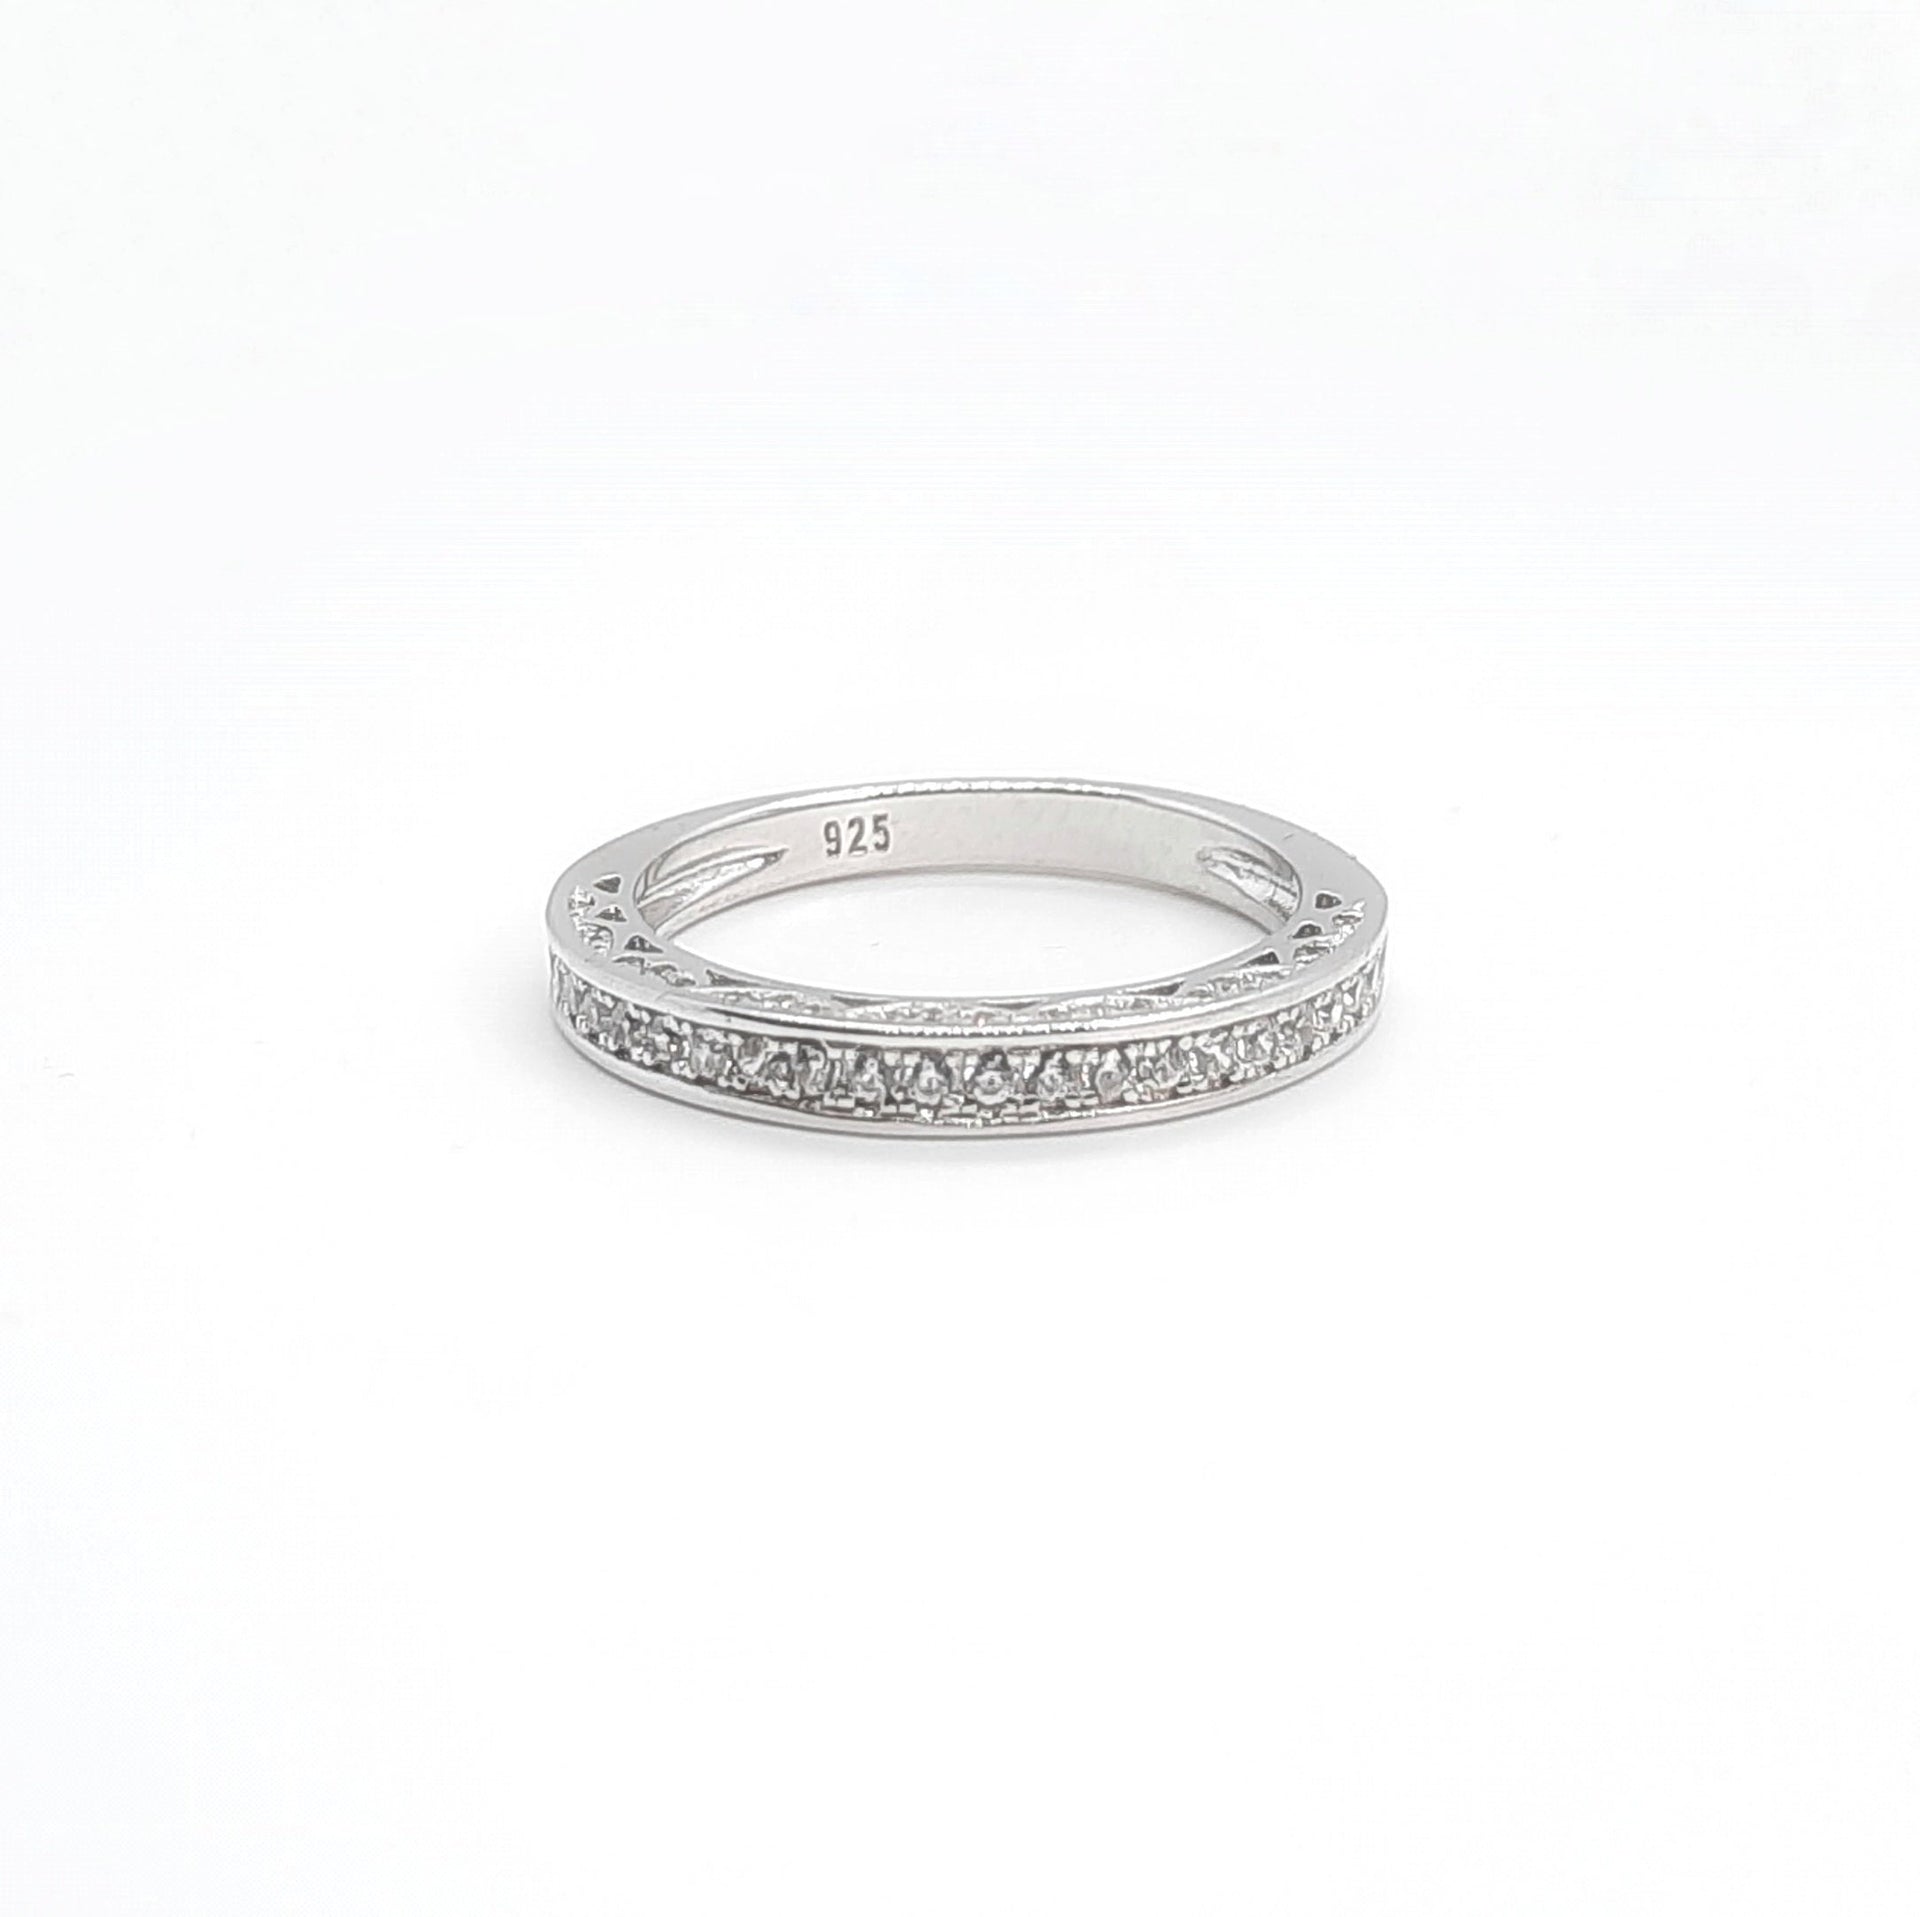 Ring aus Silber umgeben von Edelsteinen - Eternity Ringe KOOMPLIMENTS